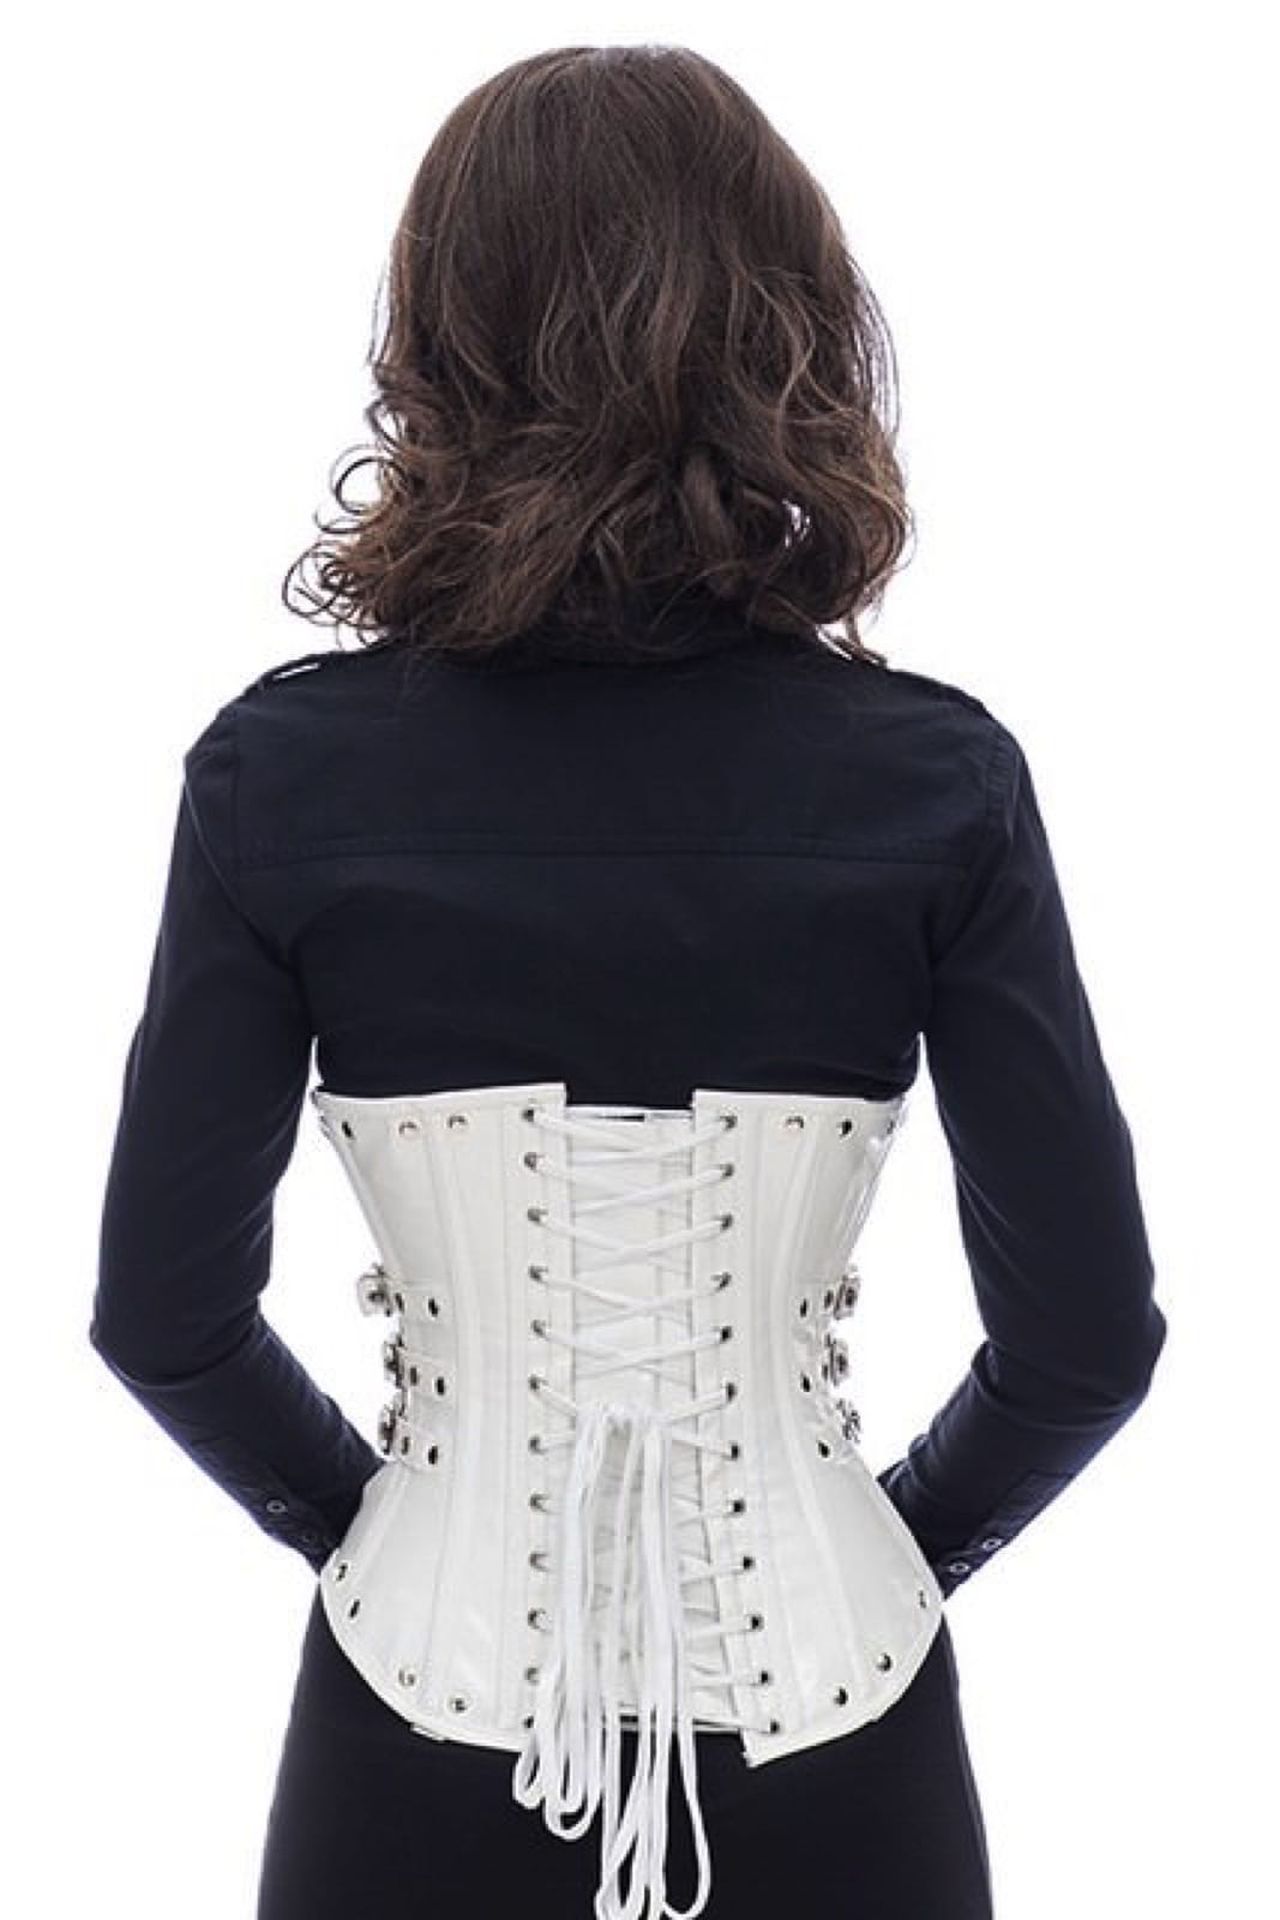 Lak corset wit onderborst met studs en zijdelingse gespen Korset pg76